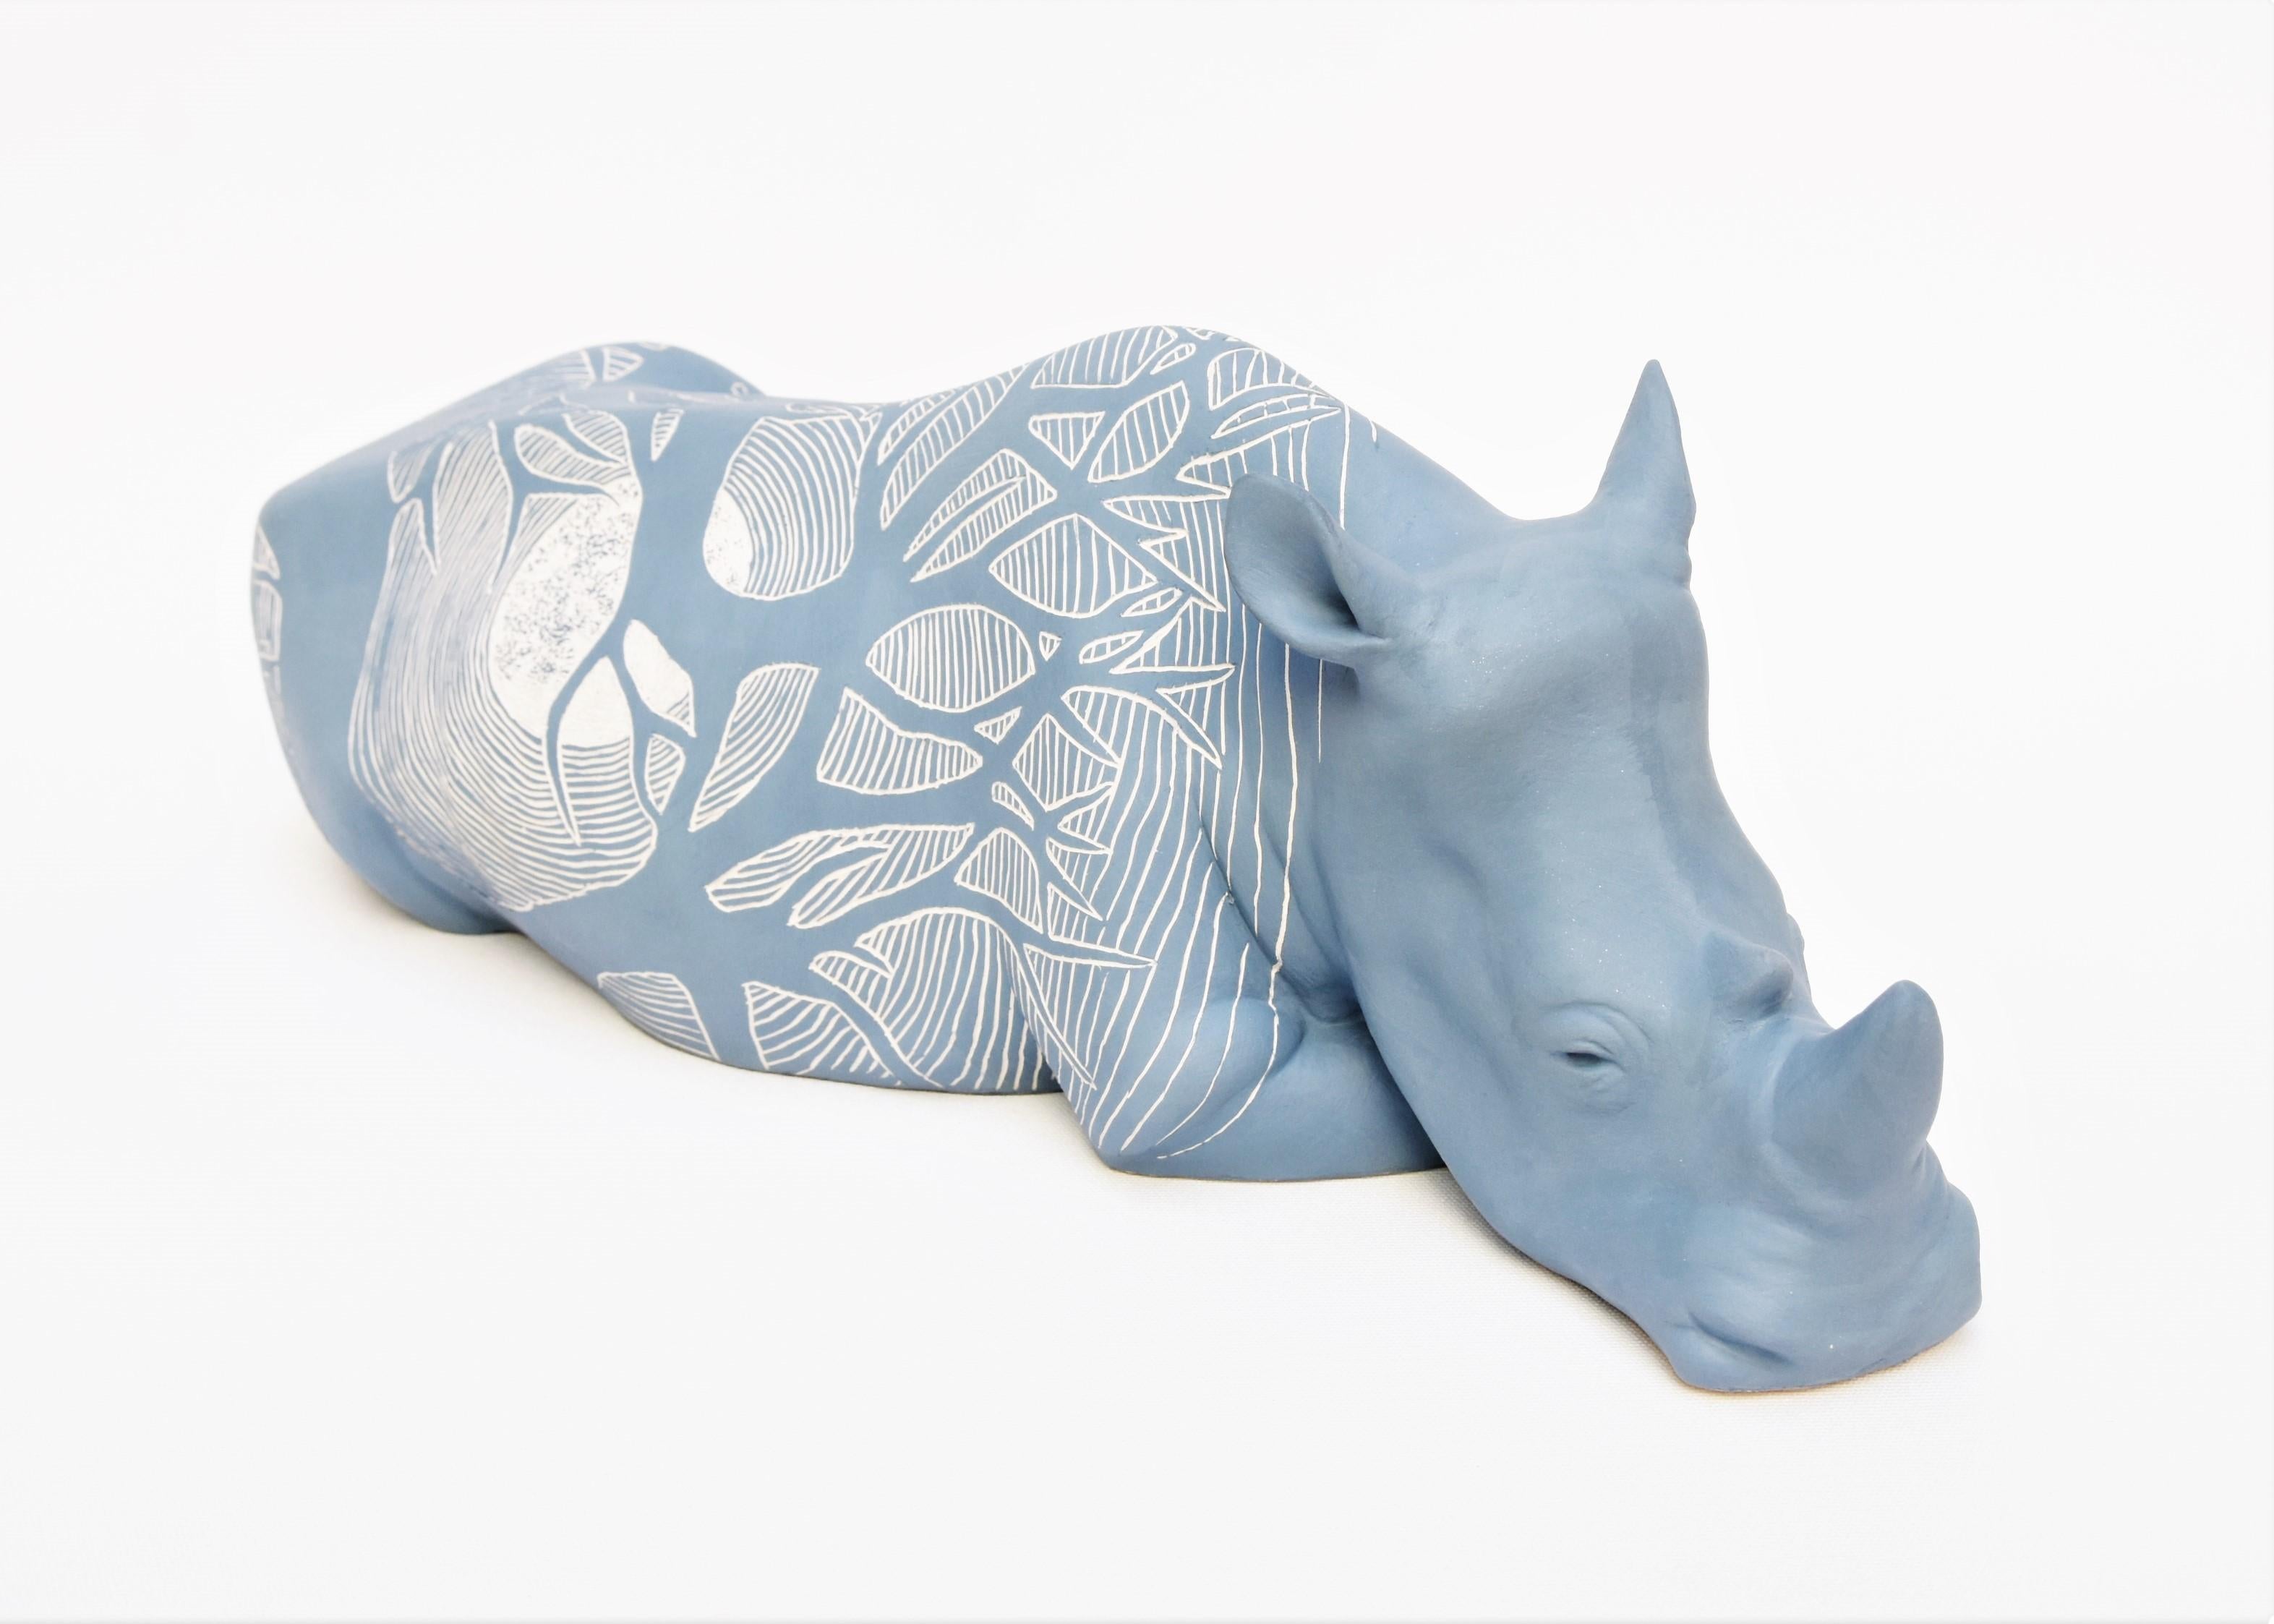 Figurative Sculpture Sabina Pelc - « Rhinoceros - Le clair de lune », sculpture animalière unique, céramique, technique sgraffite